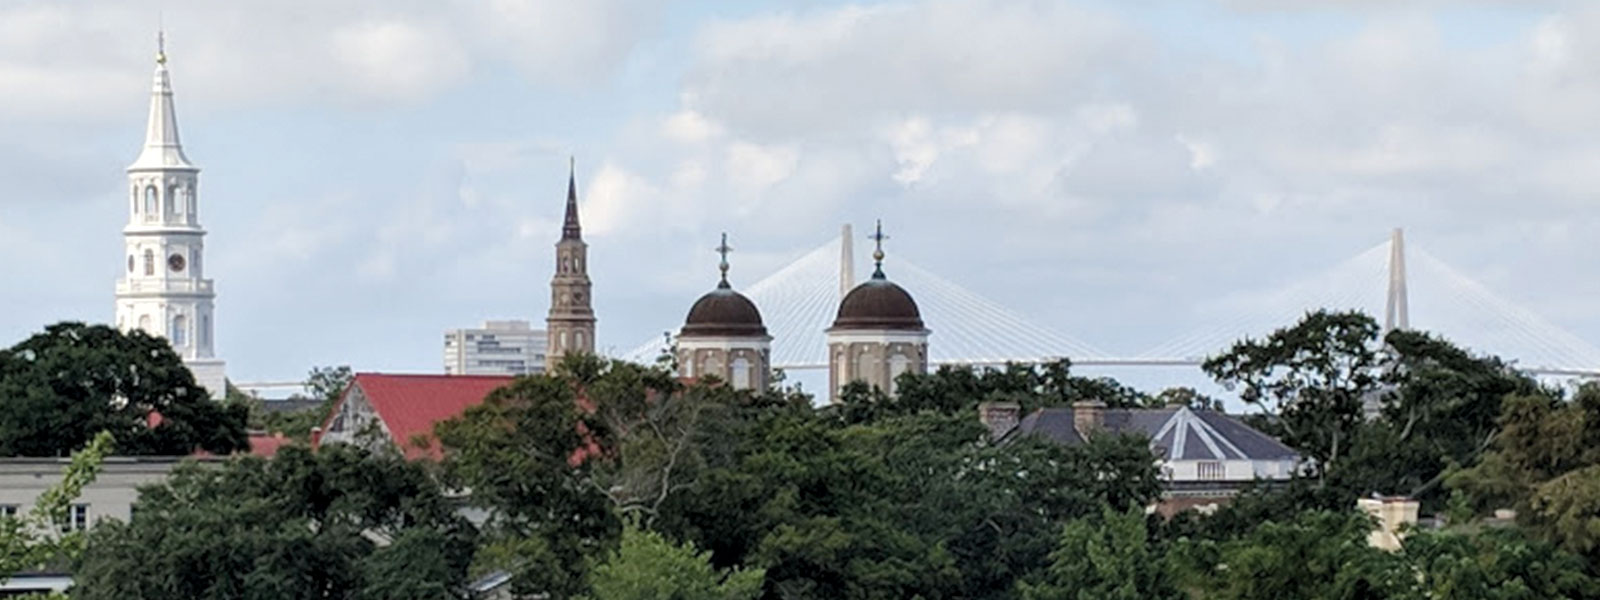 Historic Restoration Charleston SC